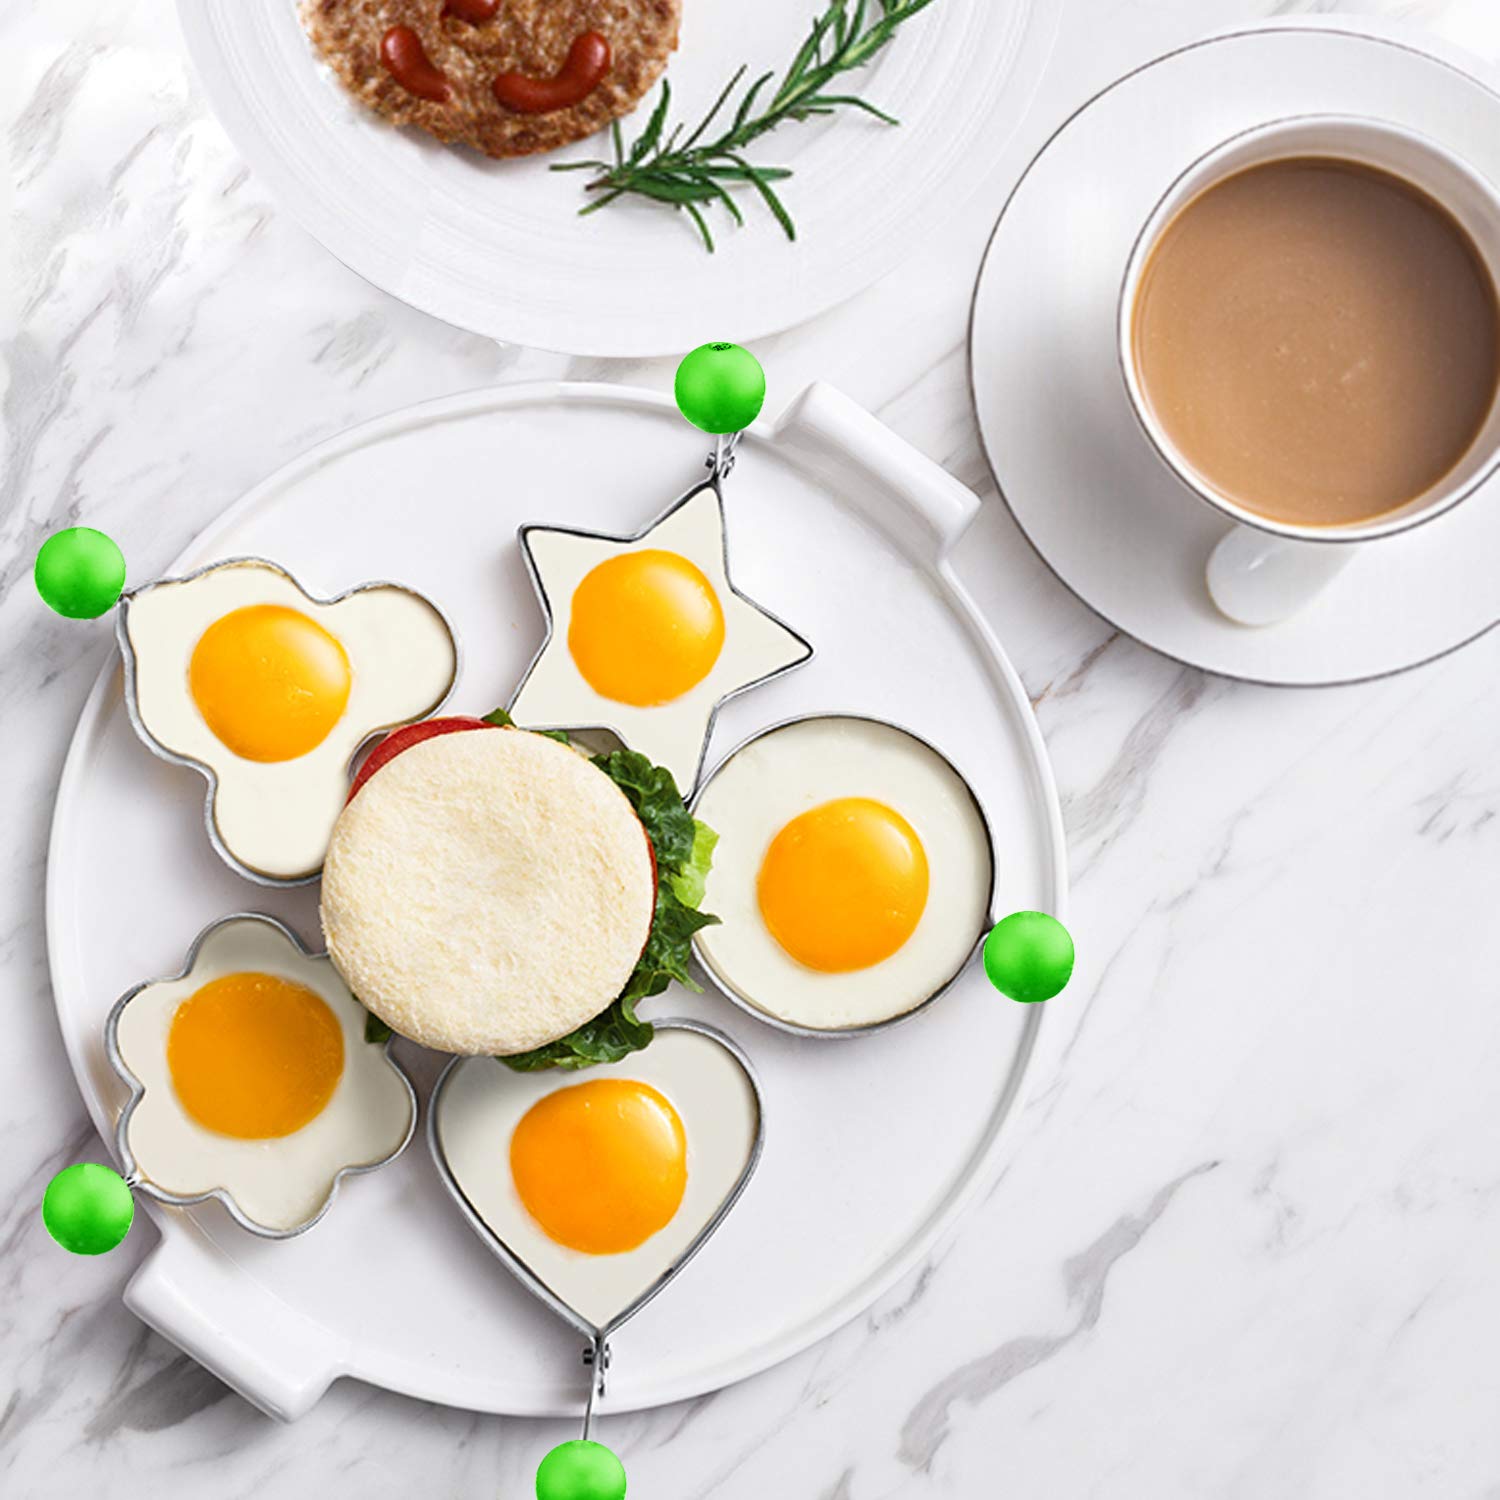 Set 5 forme pentru oua ochiuri sau micul dejun